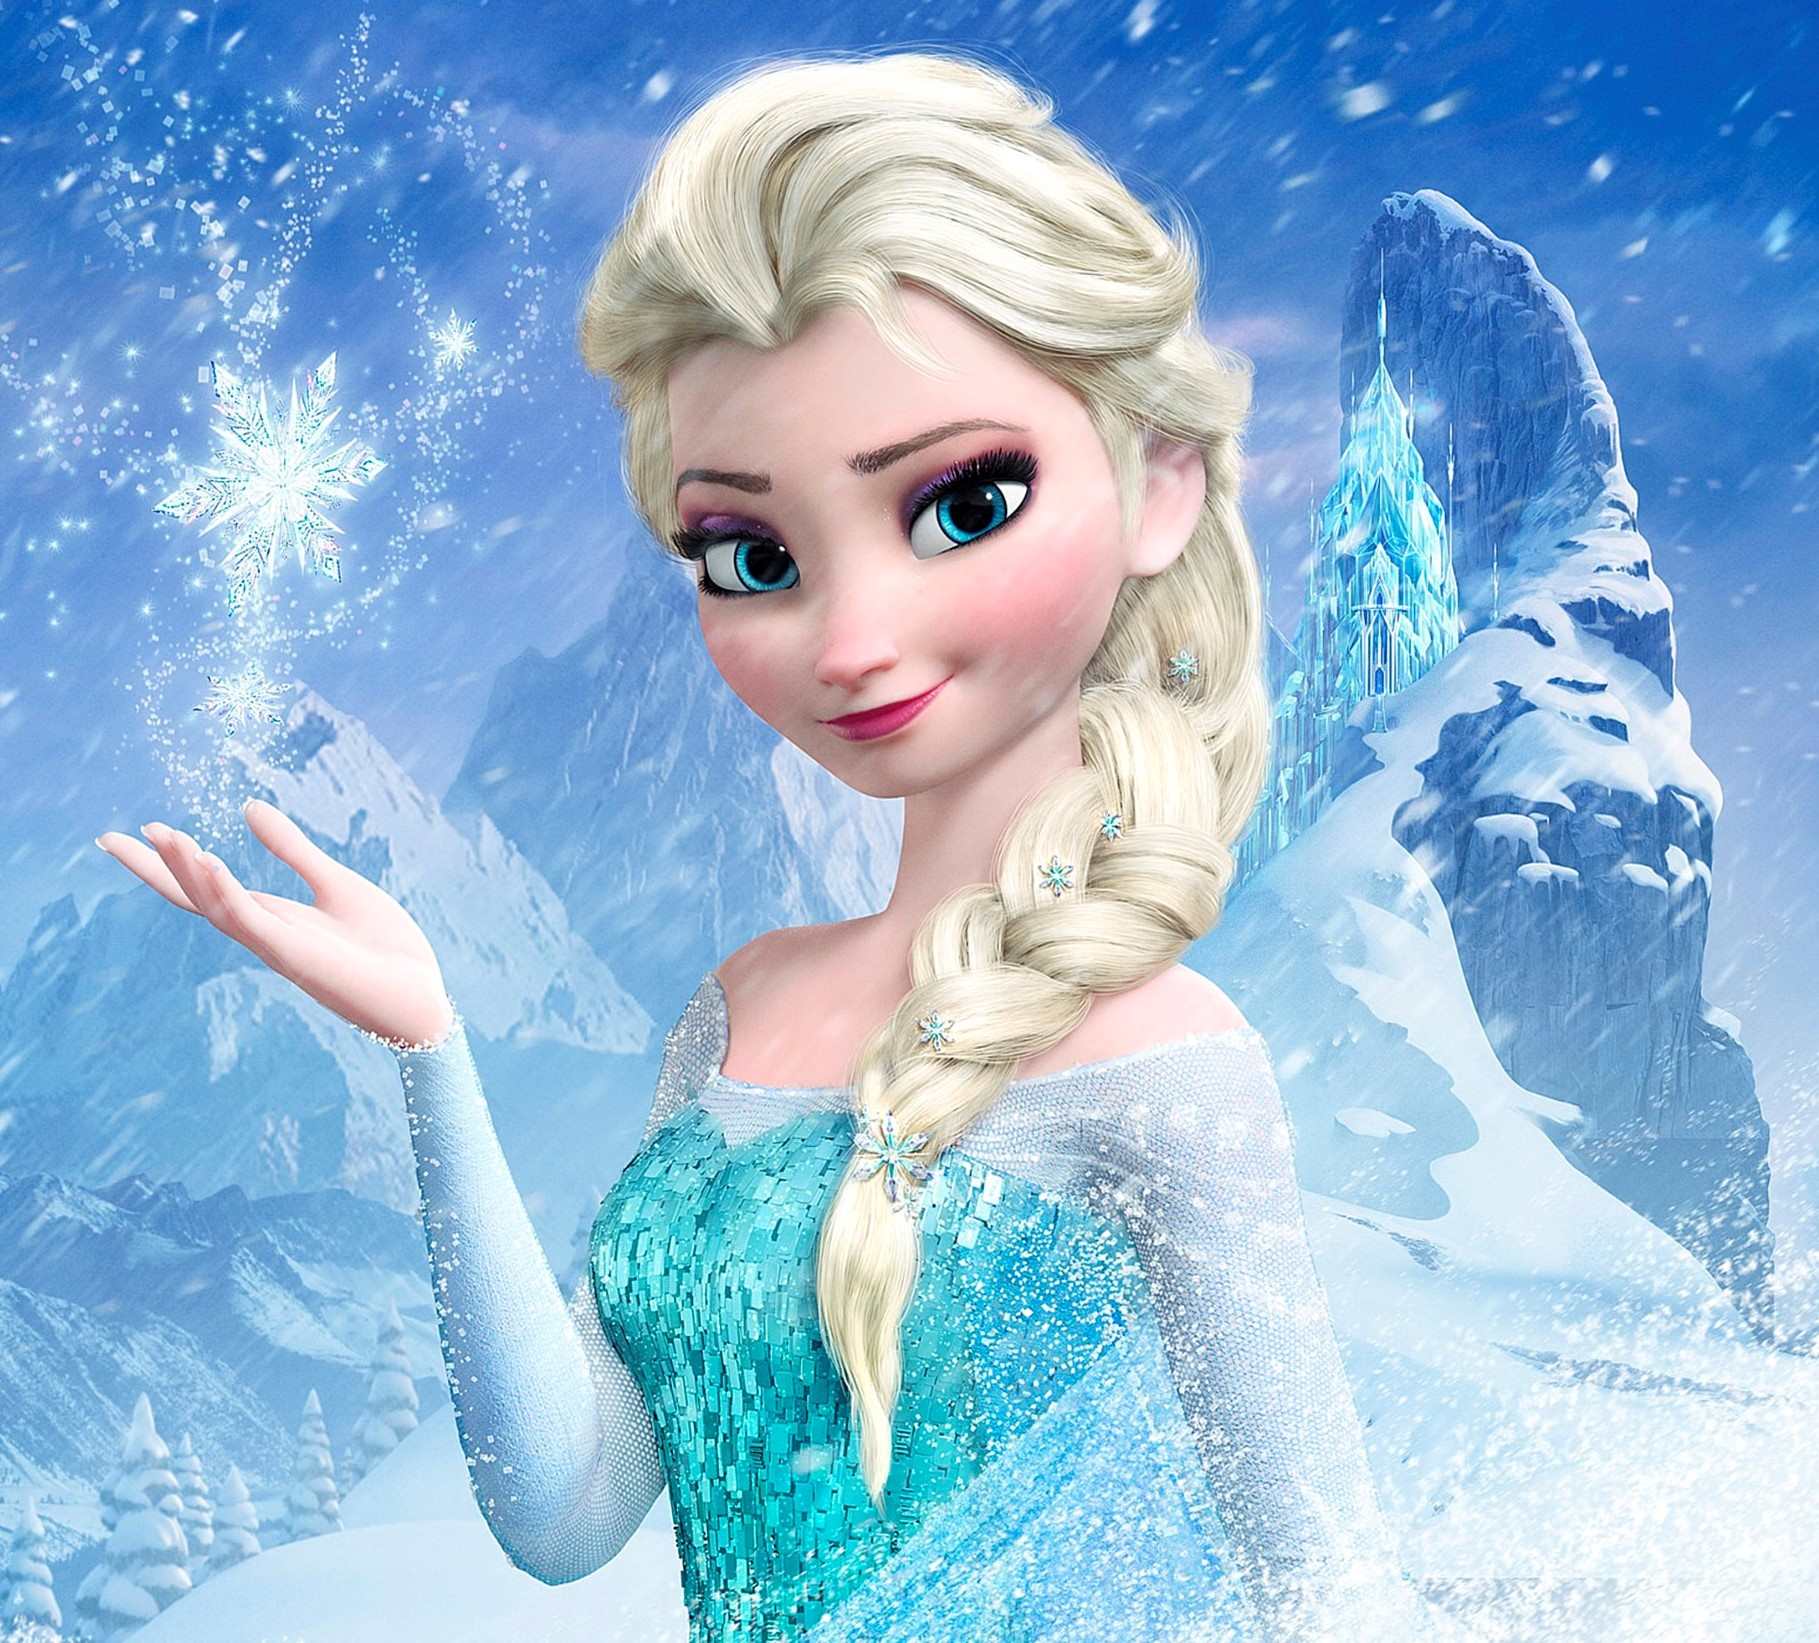 The Type of Love in Frozen 3 : r/Frozen